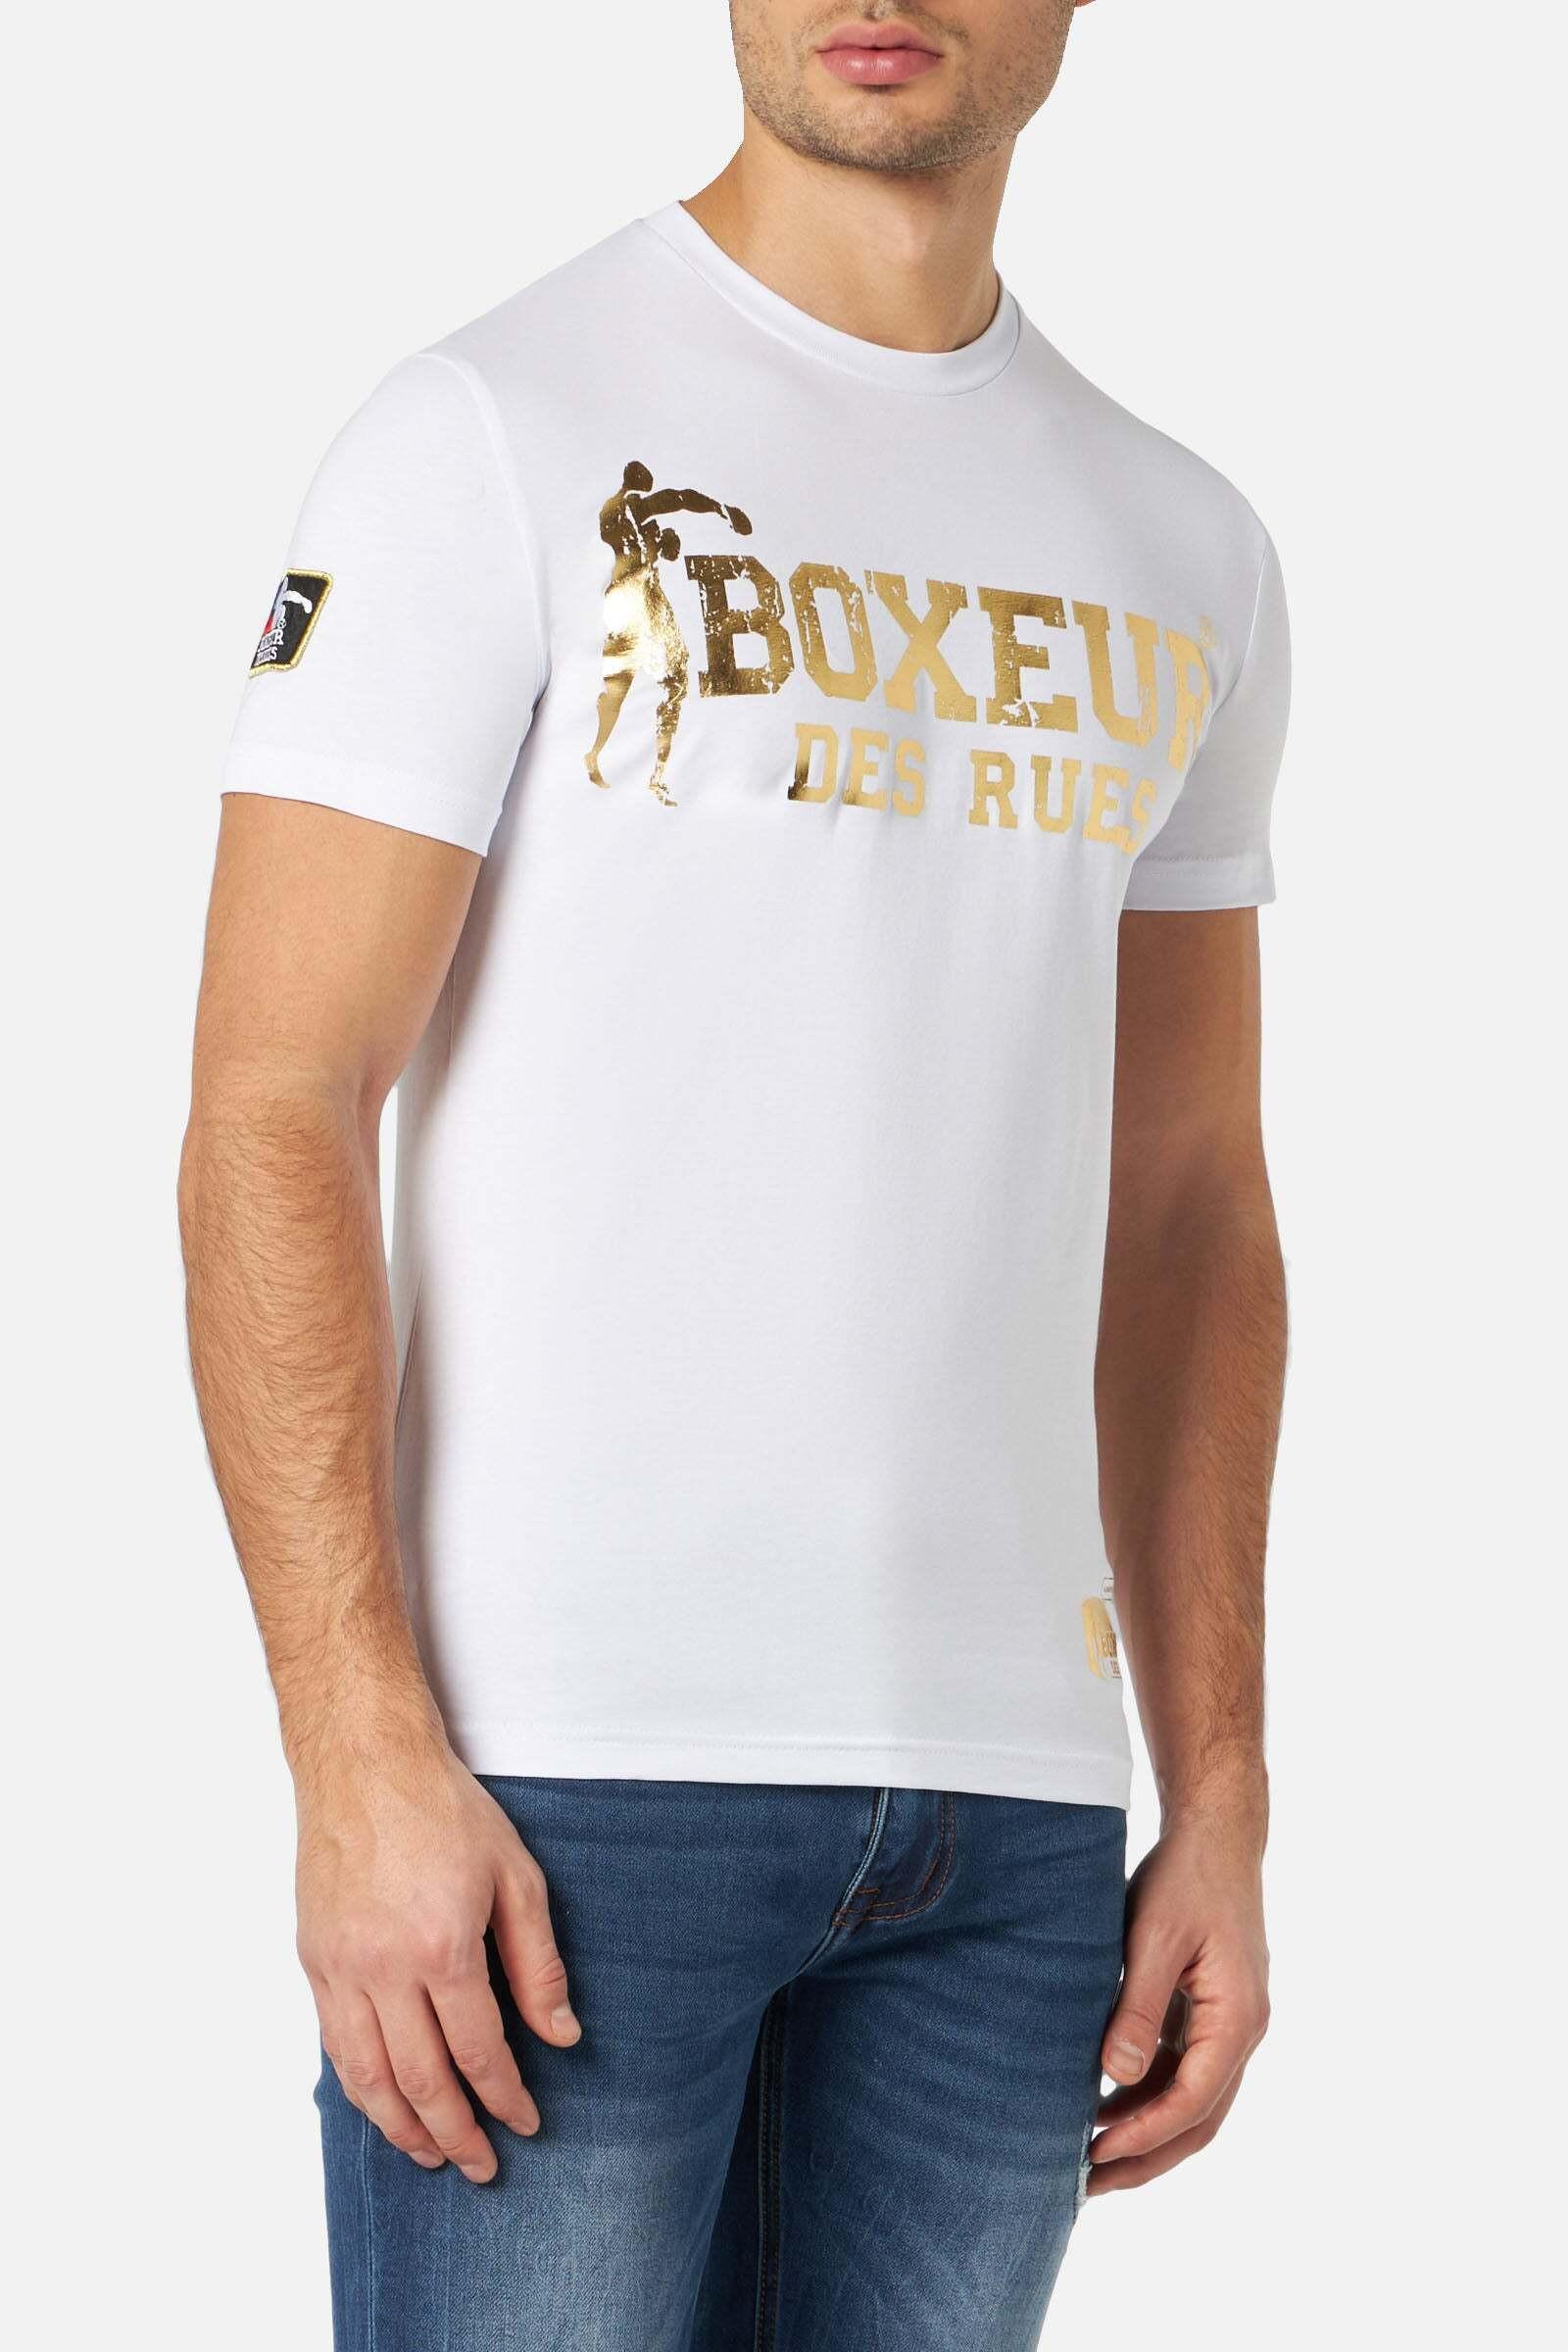 T-shirts T-shirt Boxeur Street 2 Herren Weiss XXL von BOXEUR DES RUES